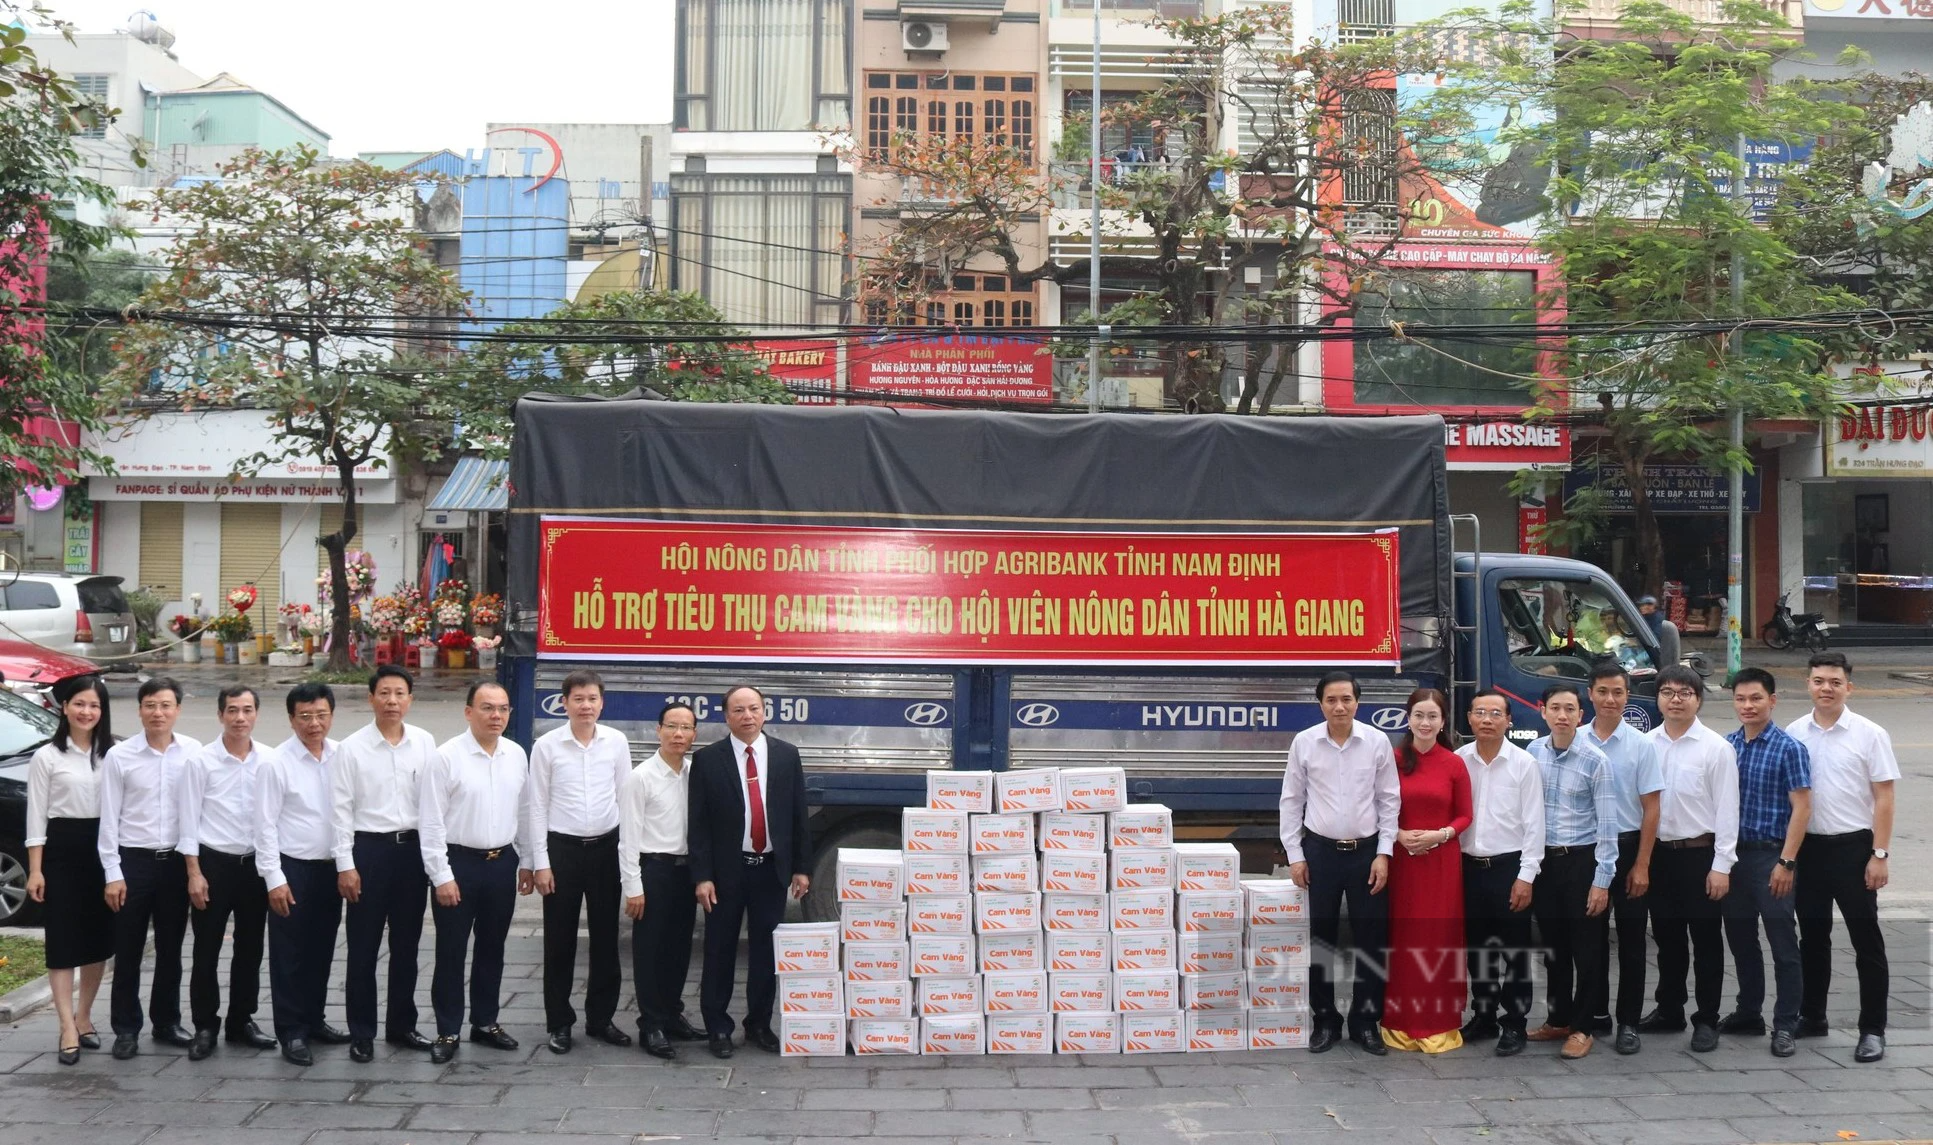 Hội Nông dân tỉnh Nam Định hỗ trợ tiêu thụ cam vàng cho nông dân tỉnh Hà Giang - Ảnh 1.